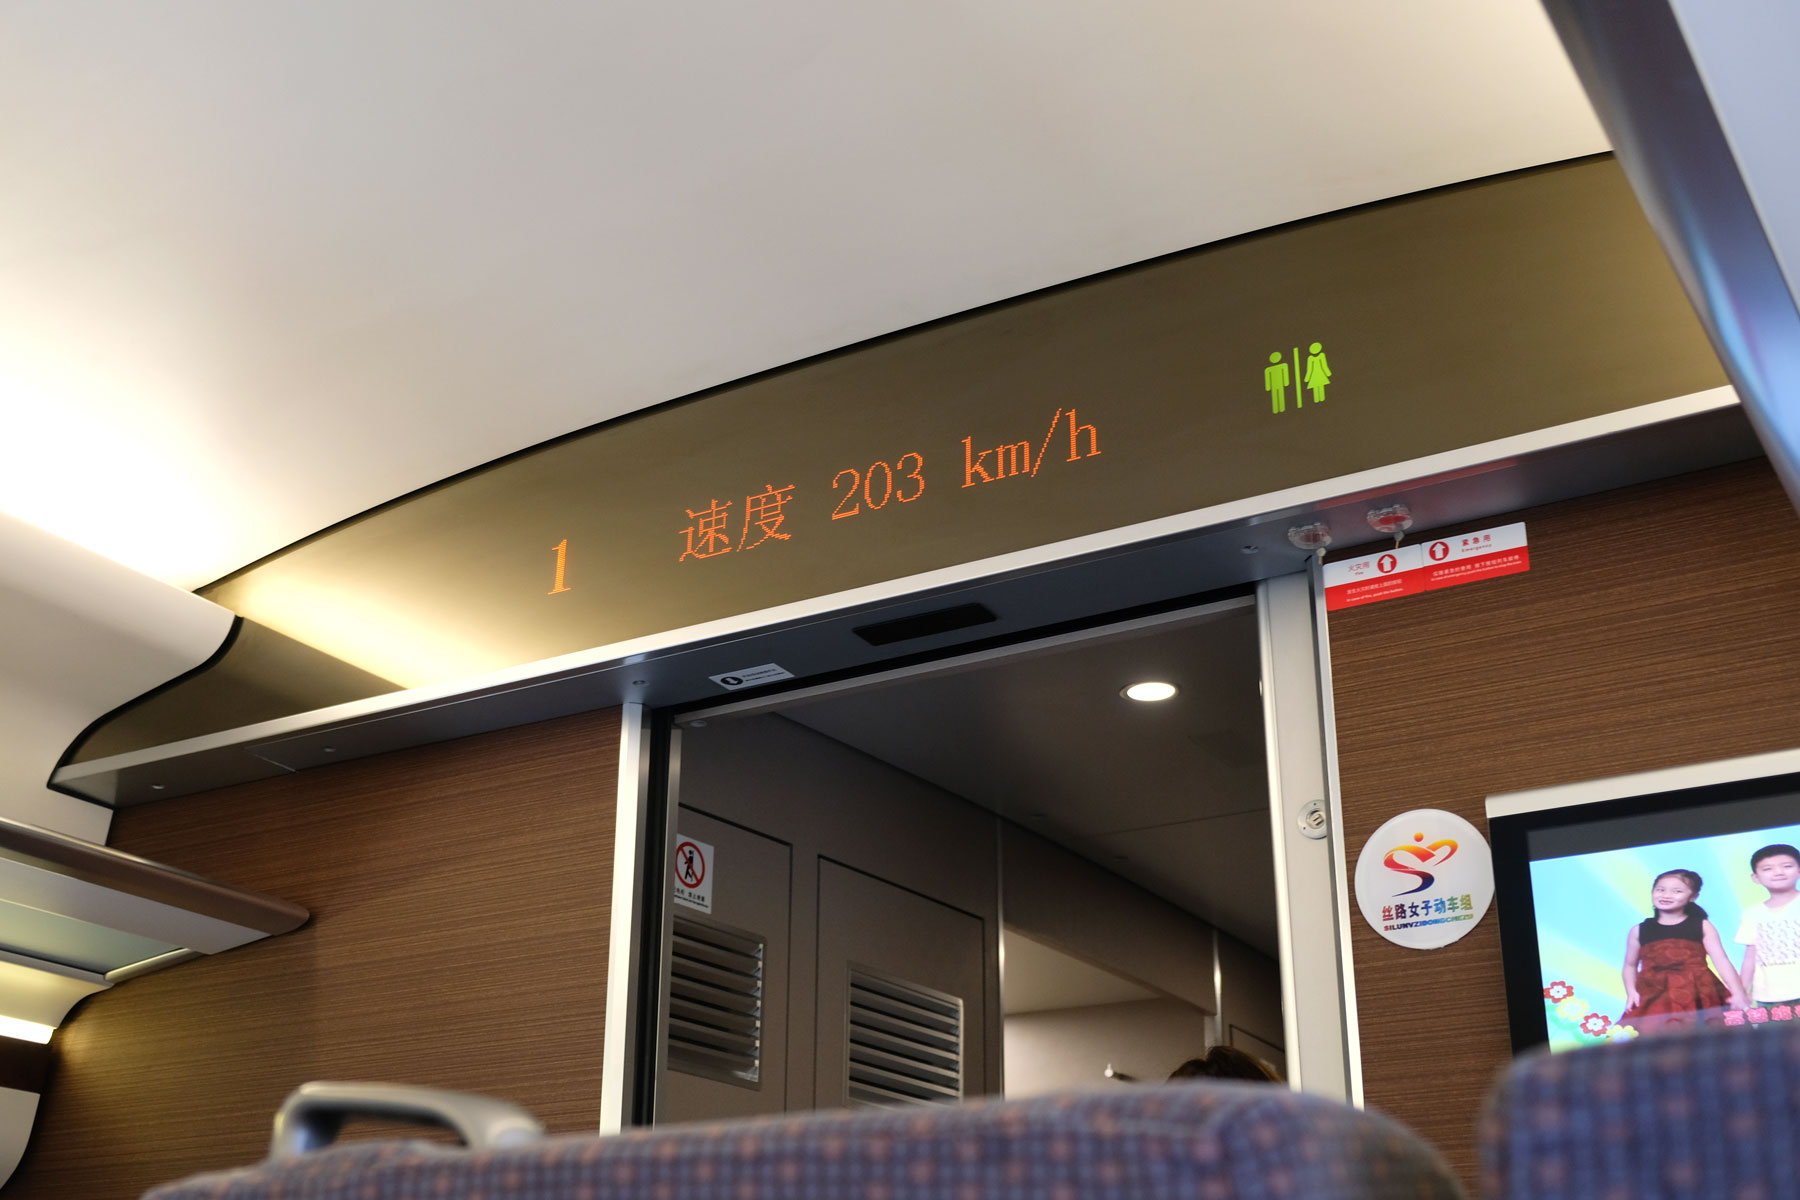 Schnellzug nach Turpan, auf dessen Anzeigetafel "203 km/h" zu lesen ist.